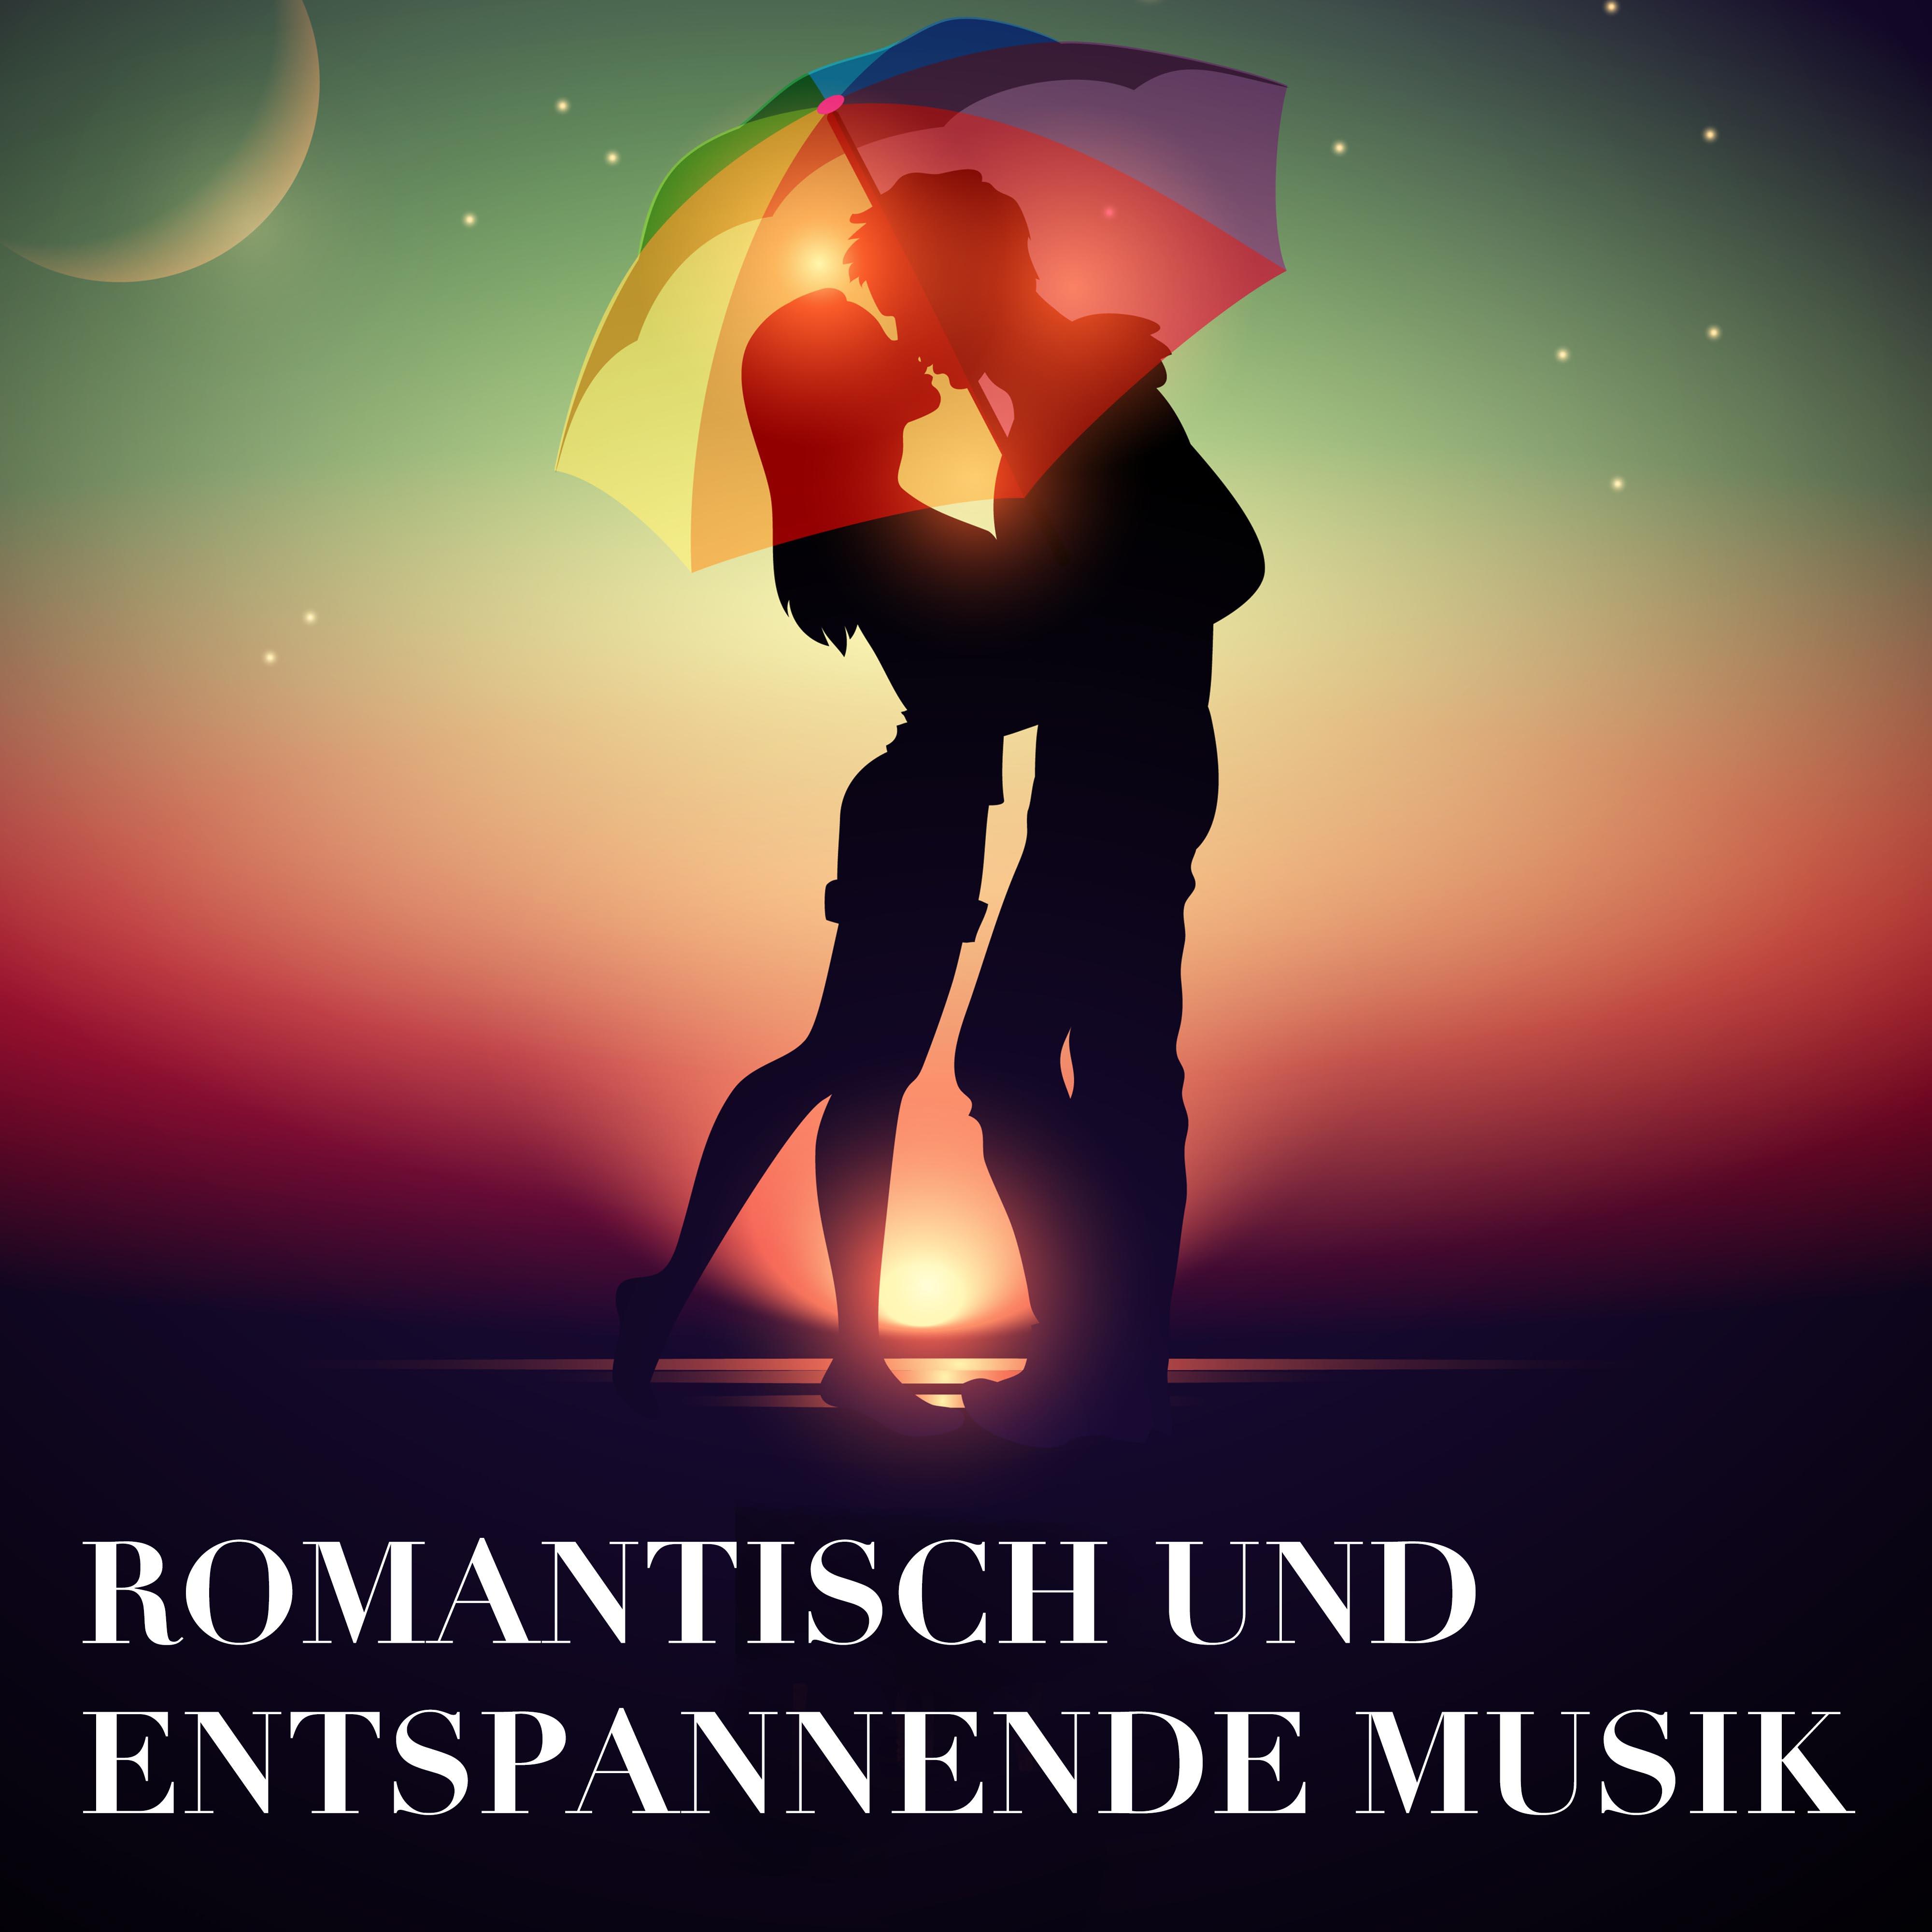 Romantisch und entspannende Musik - Lieder für intime und sinnliche Momente der Liebe mit deinen Lieben